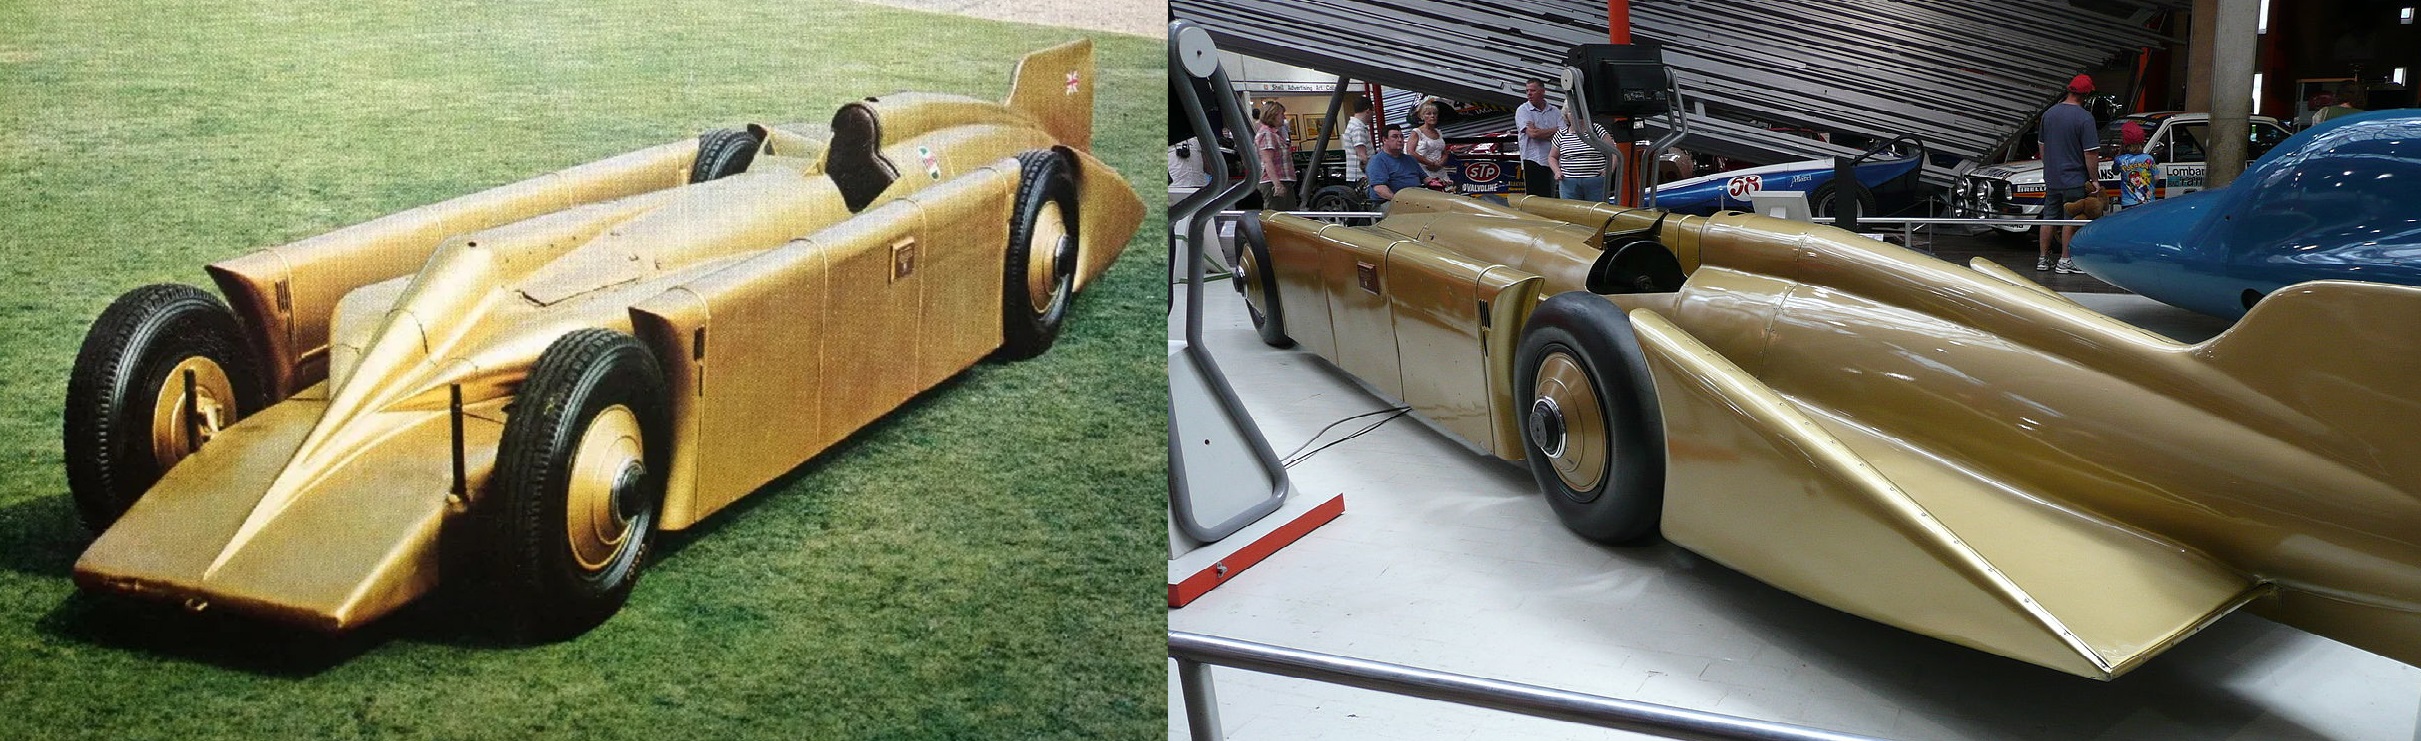 Κι όμως αυτό το αυτοκίνητο κατασκευάστηκε το 1928. Οι καινοτομίες του εφαρμόστηκαν μετά από πολλές δεκαετίες